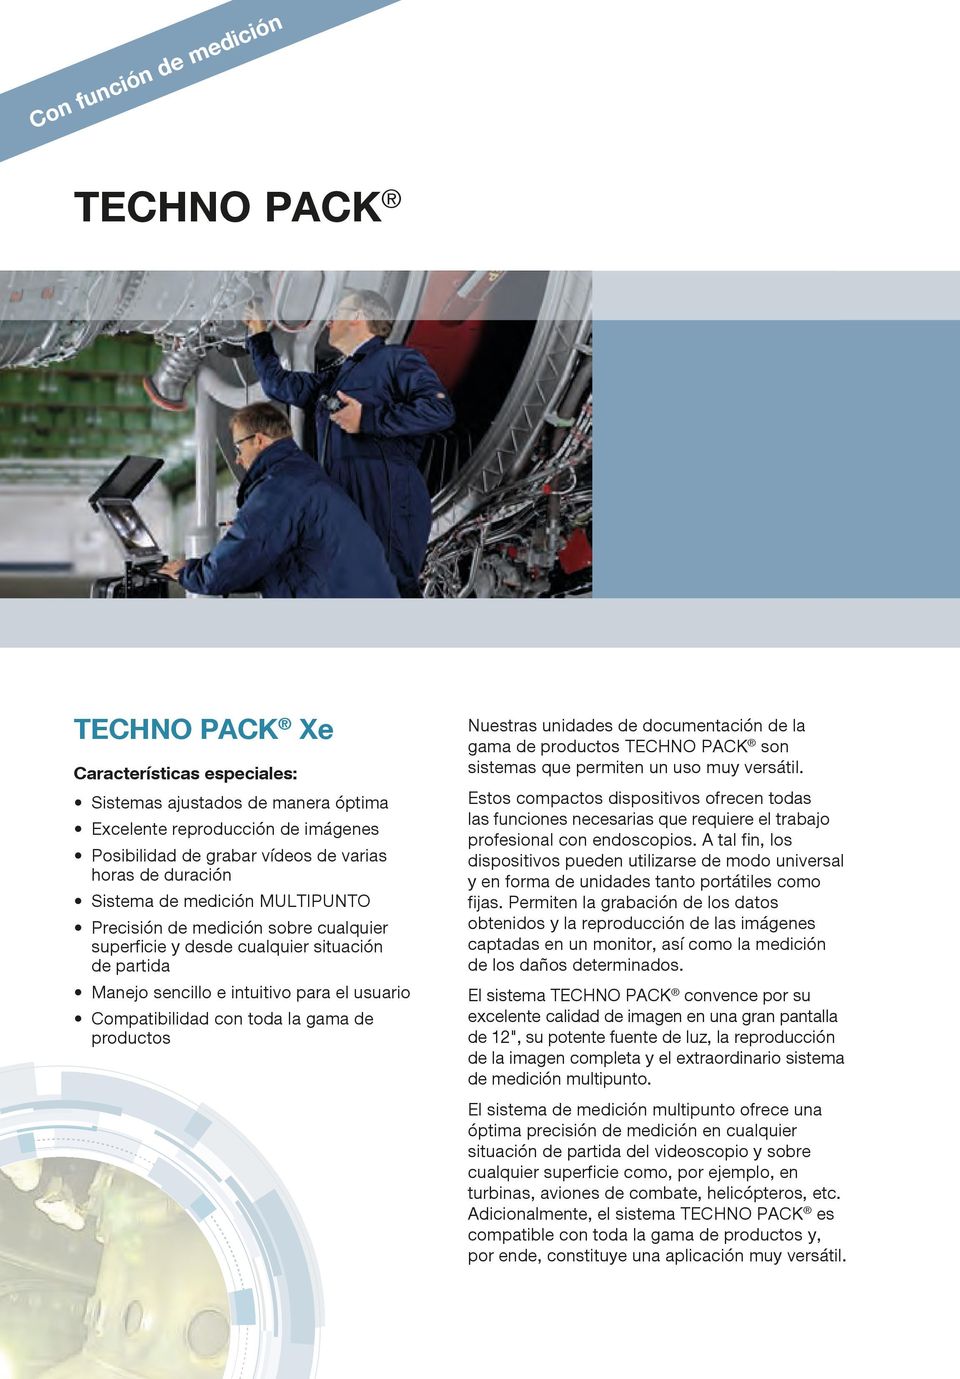 gama de productos Nuestras unidades de documentación de la gama de productos TECHNO PACK son sistemas que permiten un uso muy versátil.